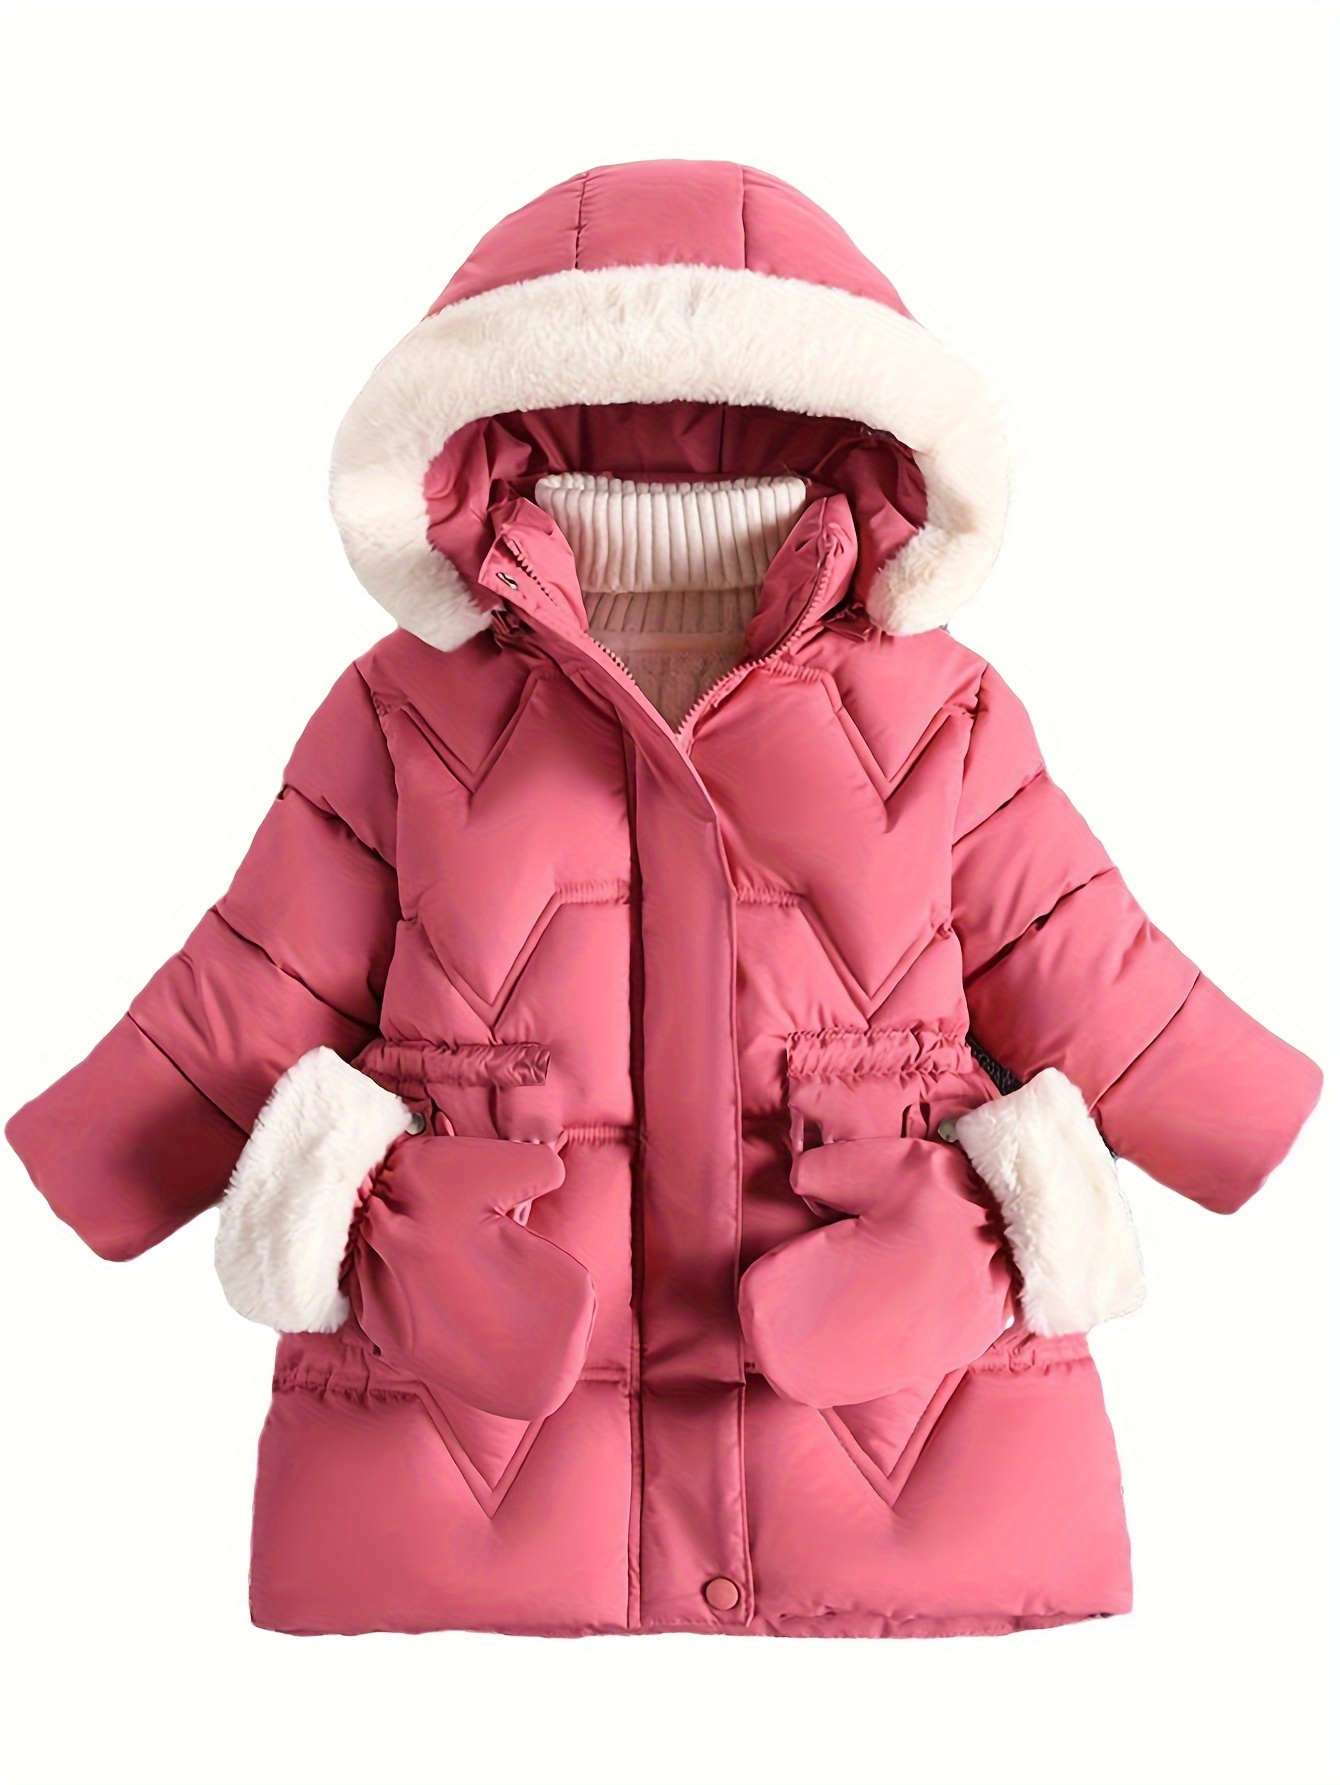 Lindos abrigos y chaquetas para bebé niño